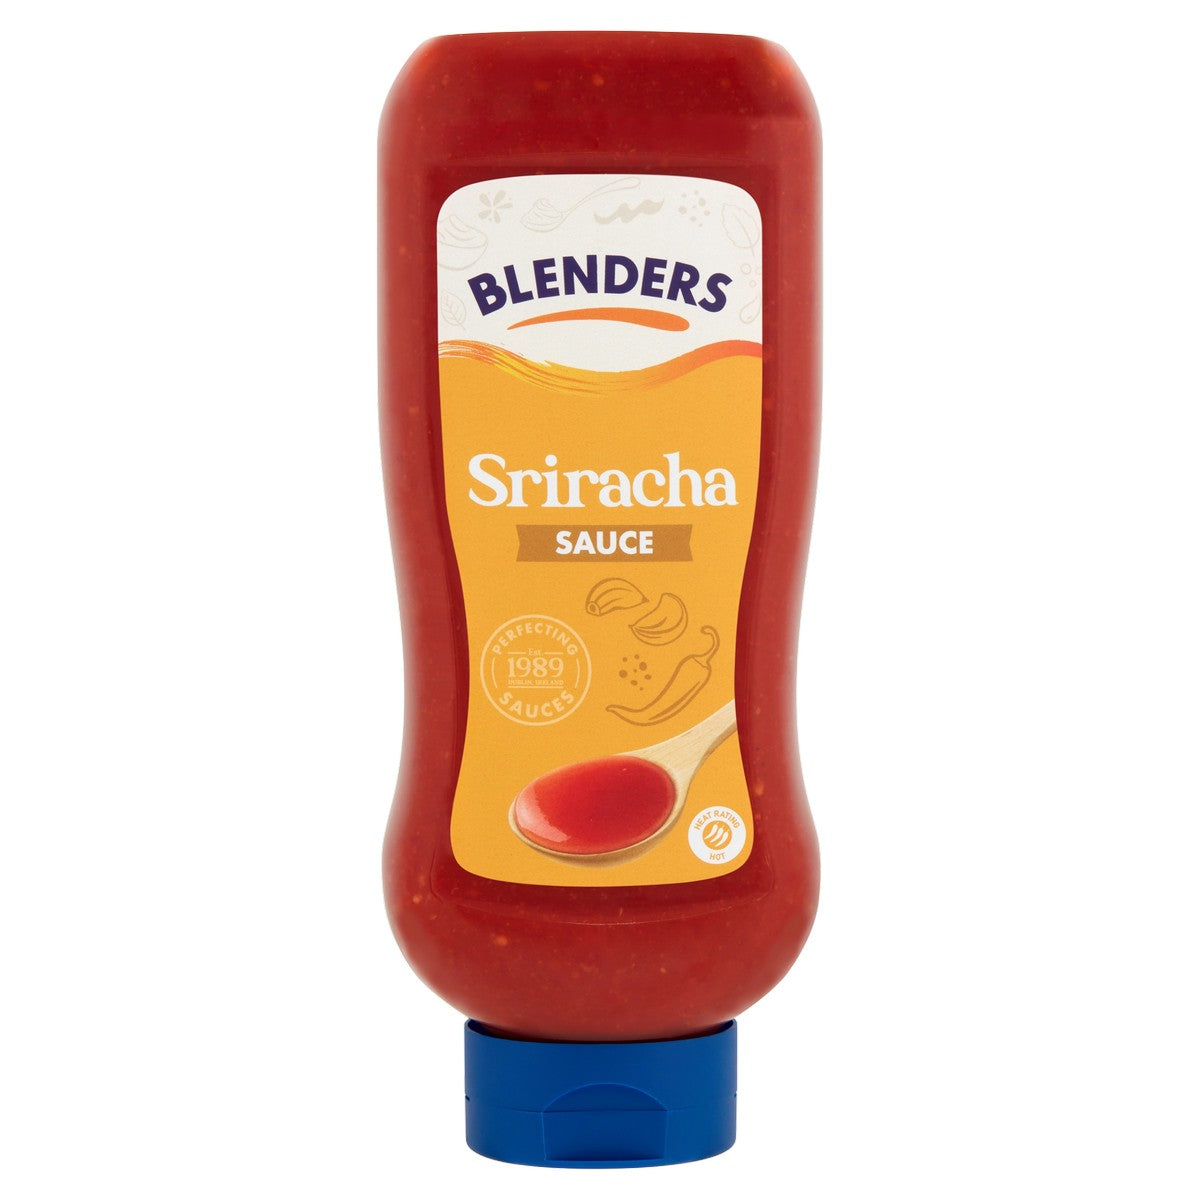 Blenders Sriracha Sauce 1kg